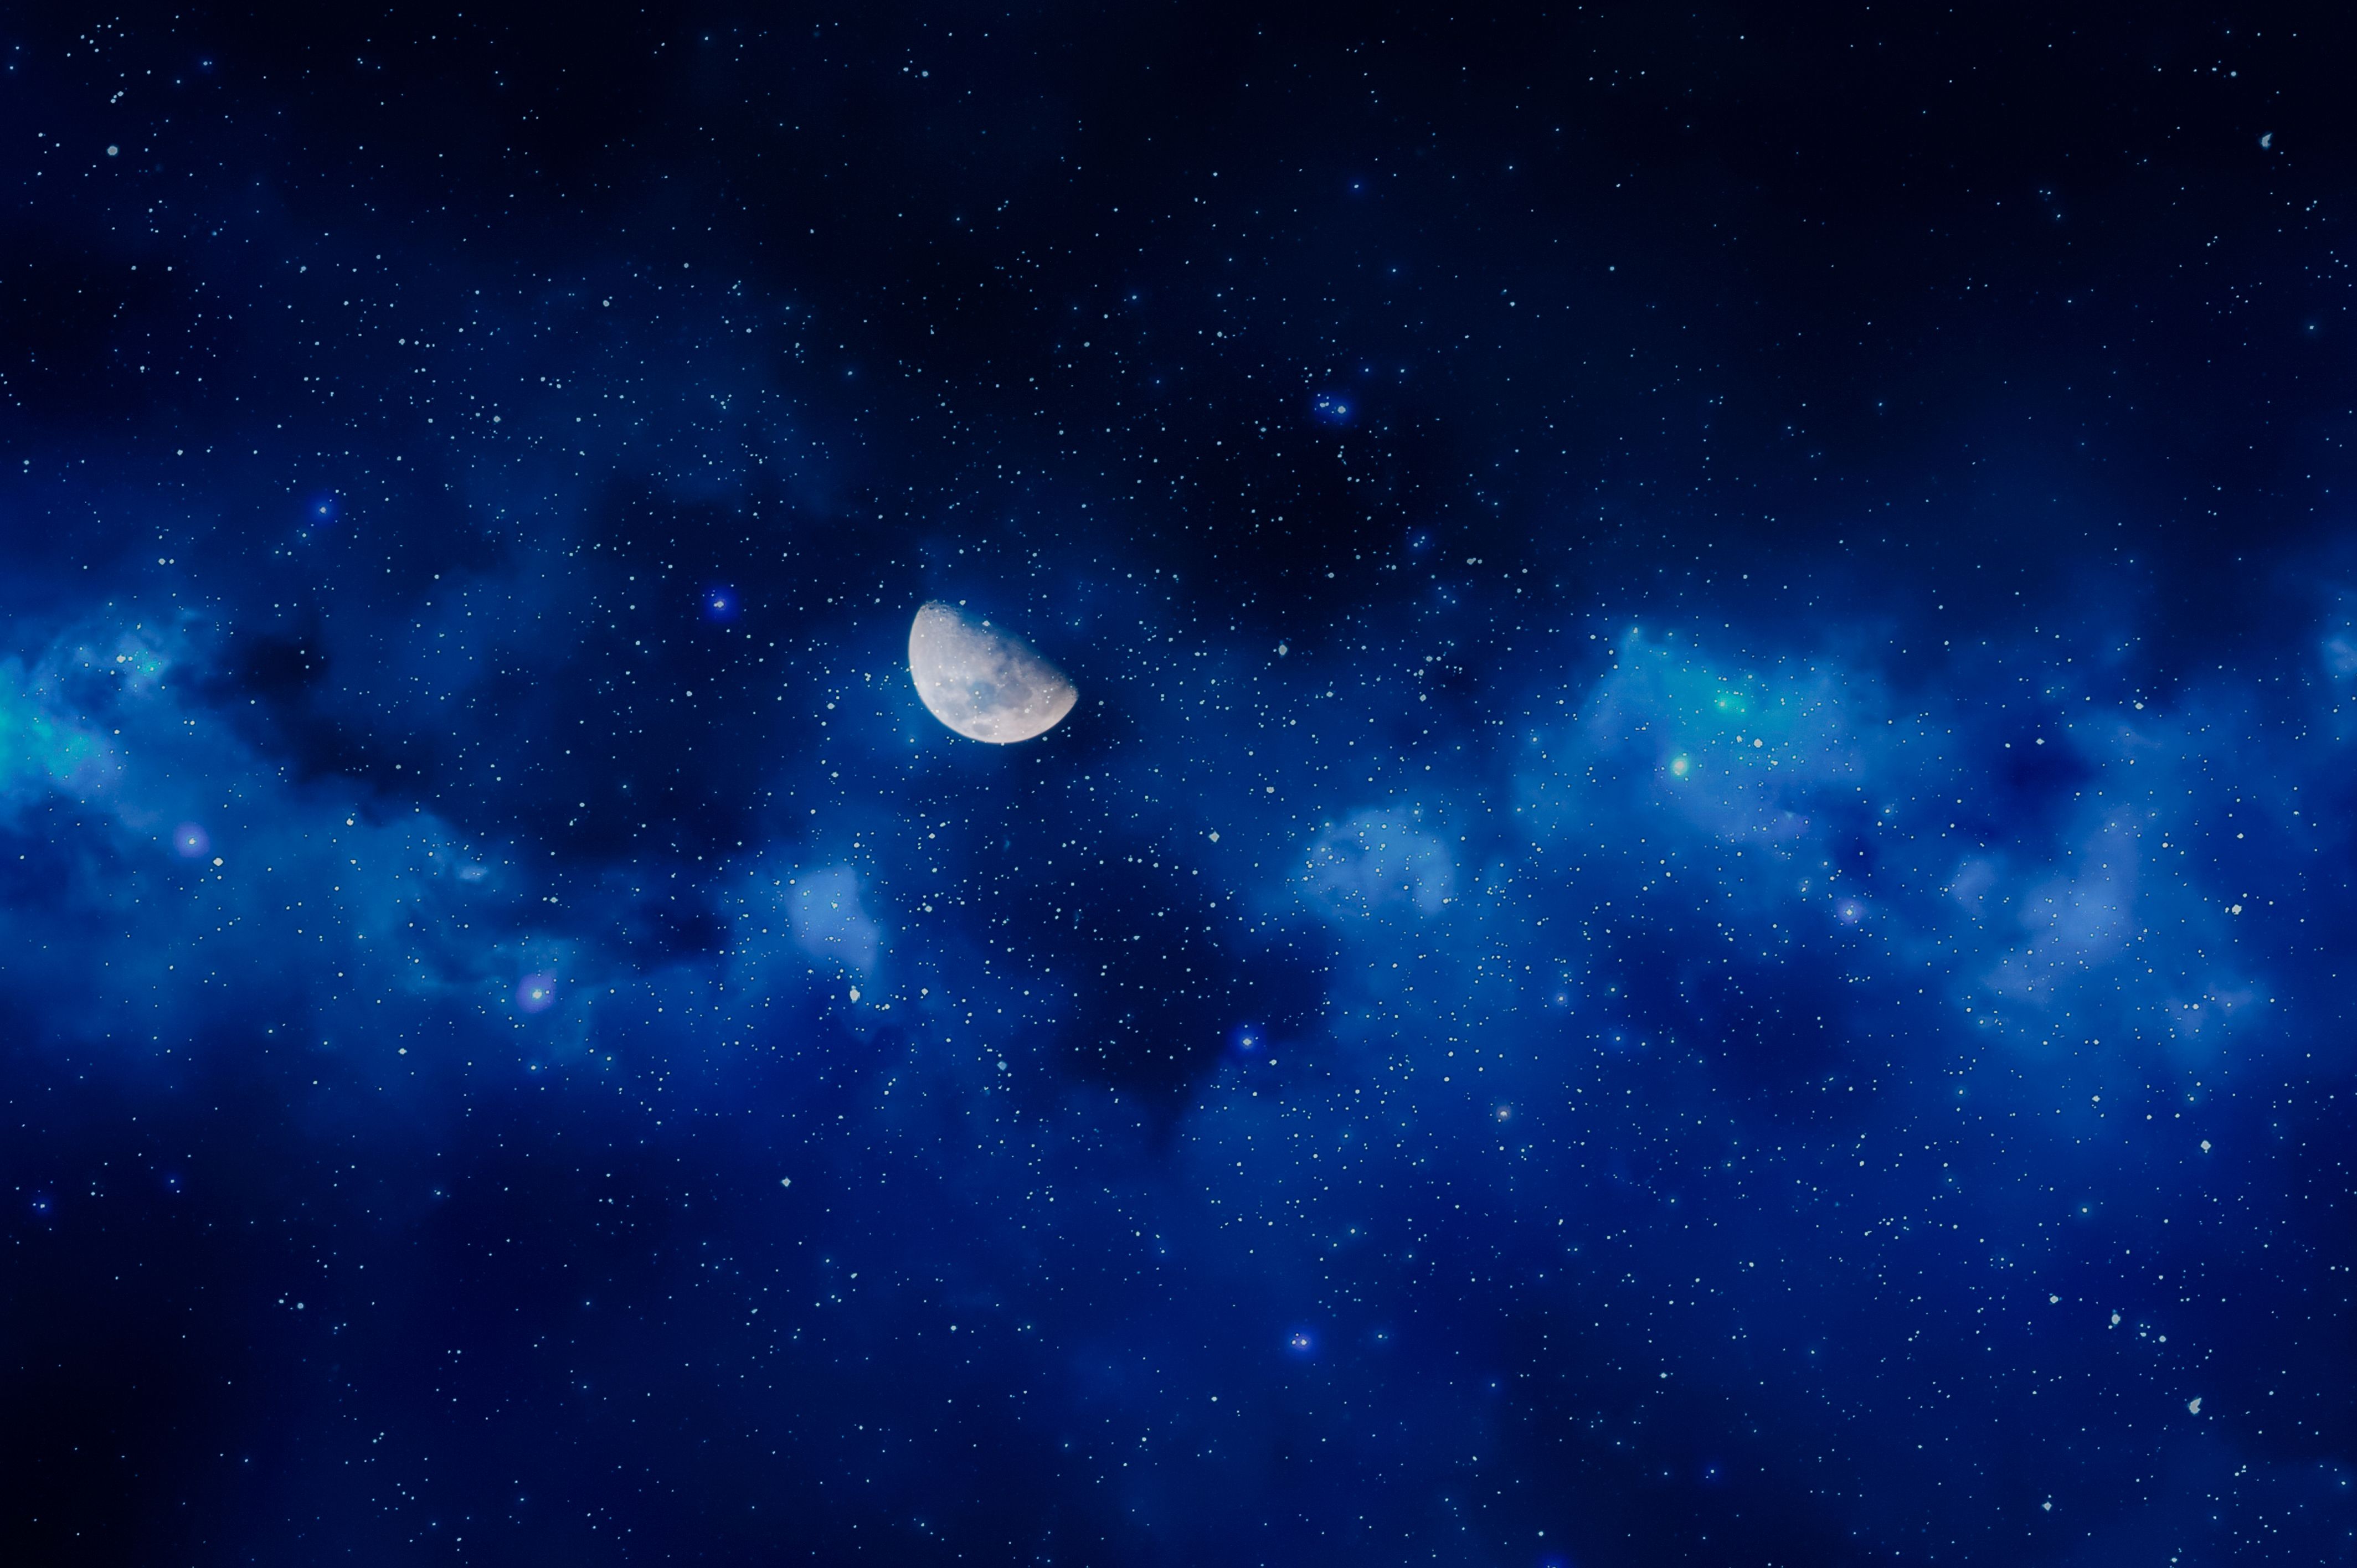  Blaue Hintergrundbild 4256x2832. Kostenlose Hintergrundbilder Weißer Mond am Blauen Himmel, Bilder Für Ihren Desktop Und Fotos